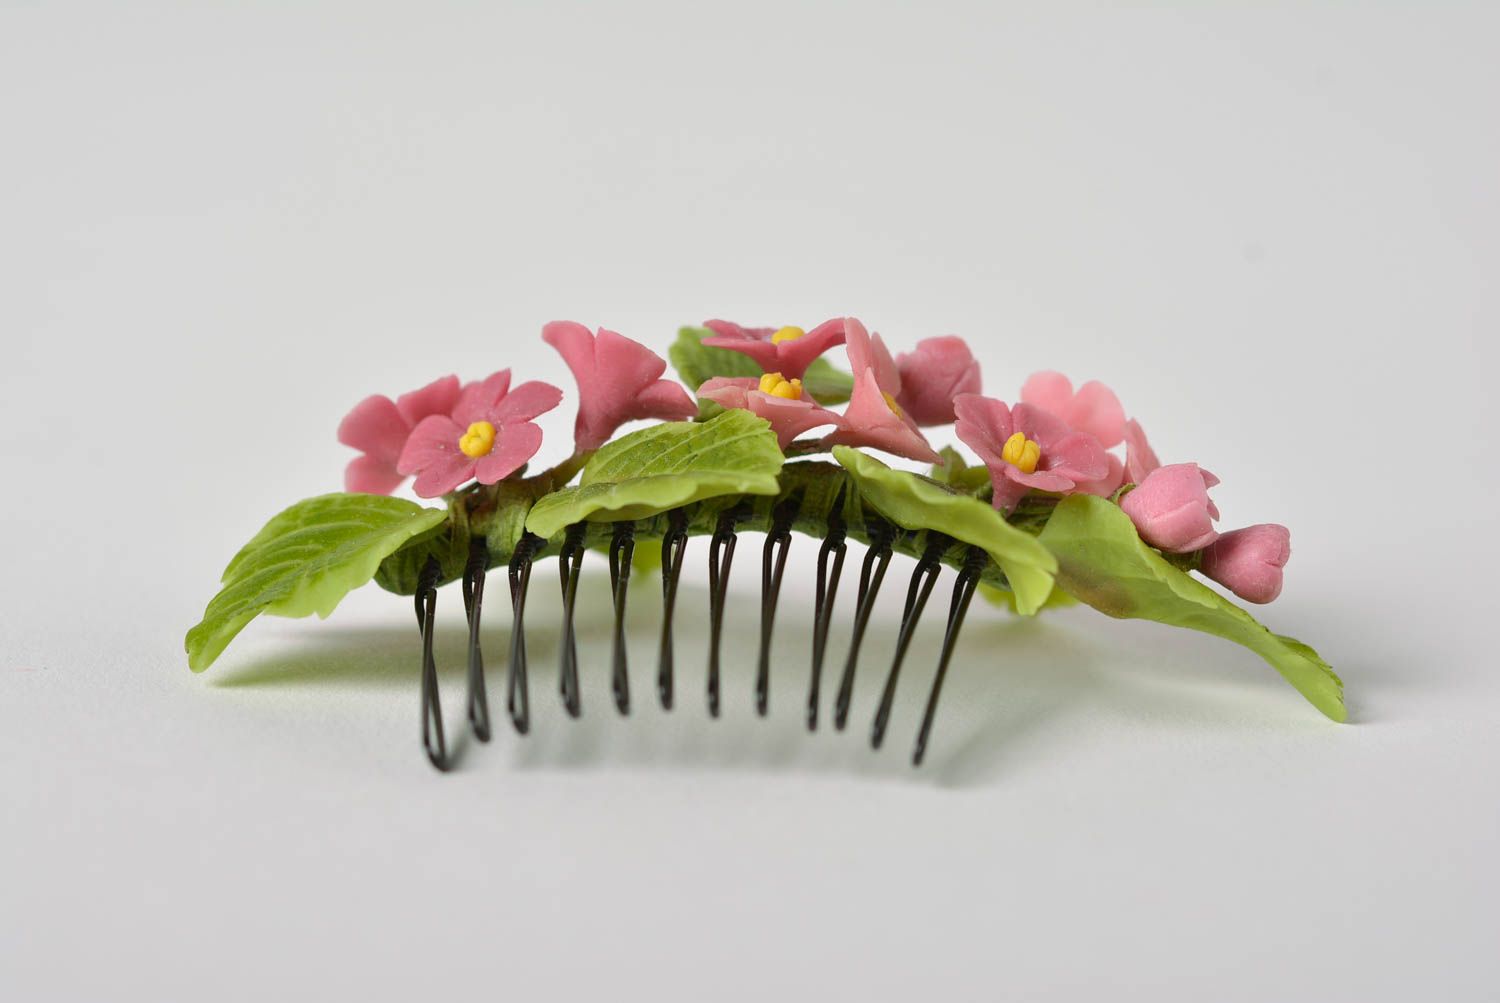 Гребень для волос с цветами из полимерной глины в розовых тонах ручная работа фото 3